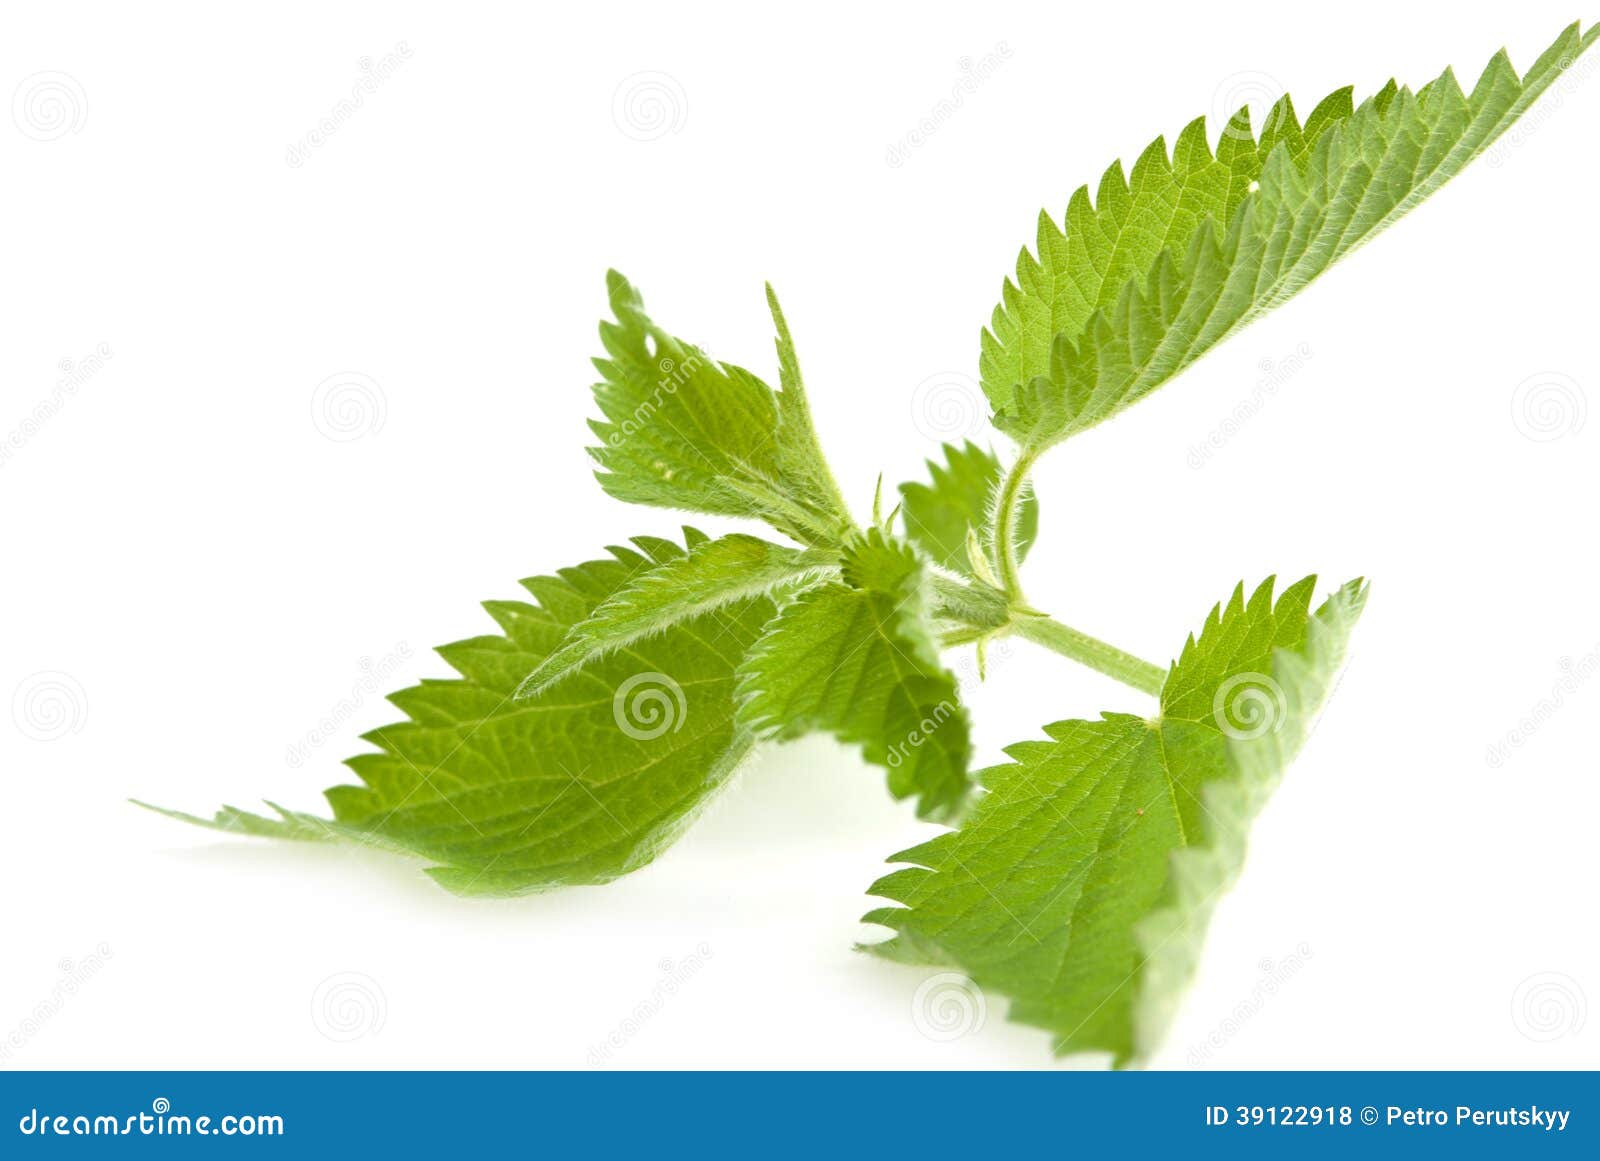 Stinging nettle stock photo. Image of herb, stinging - 39122918